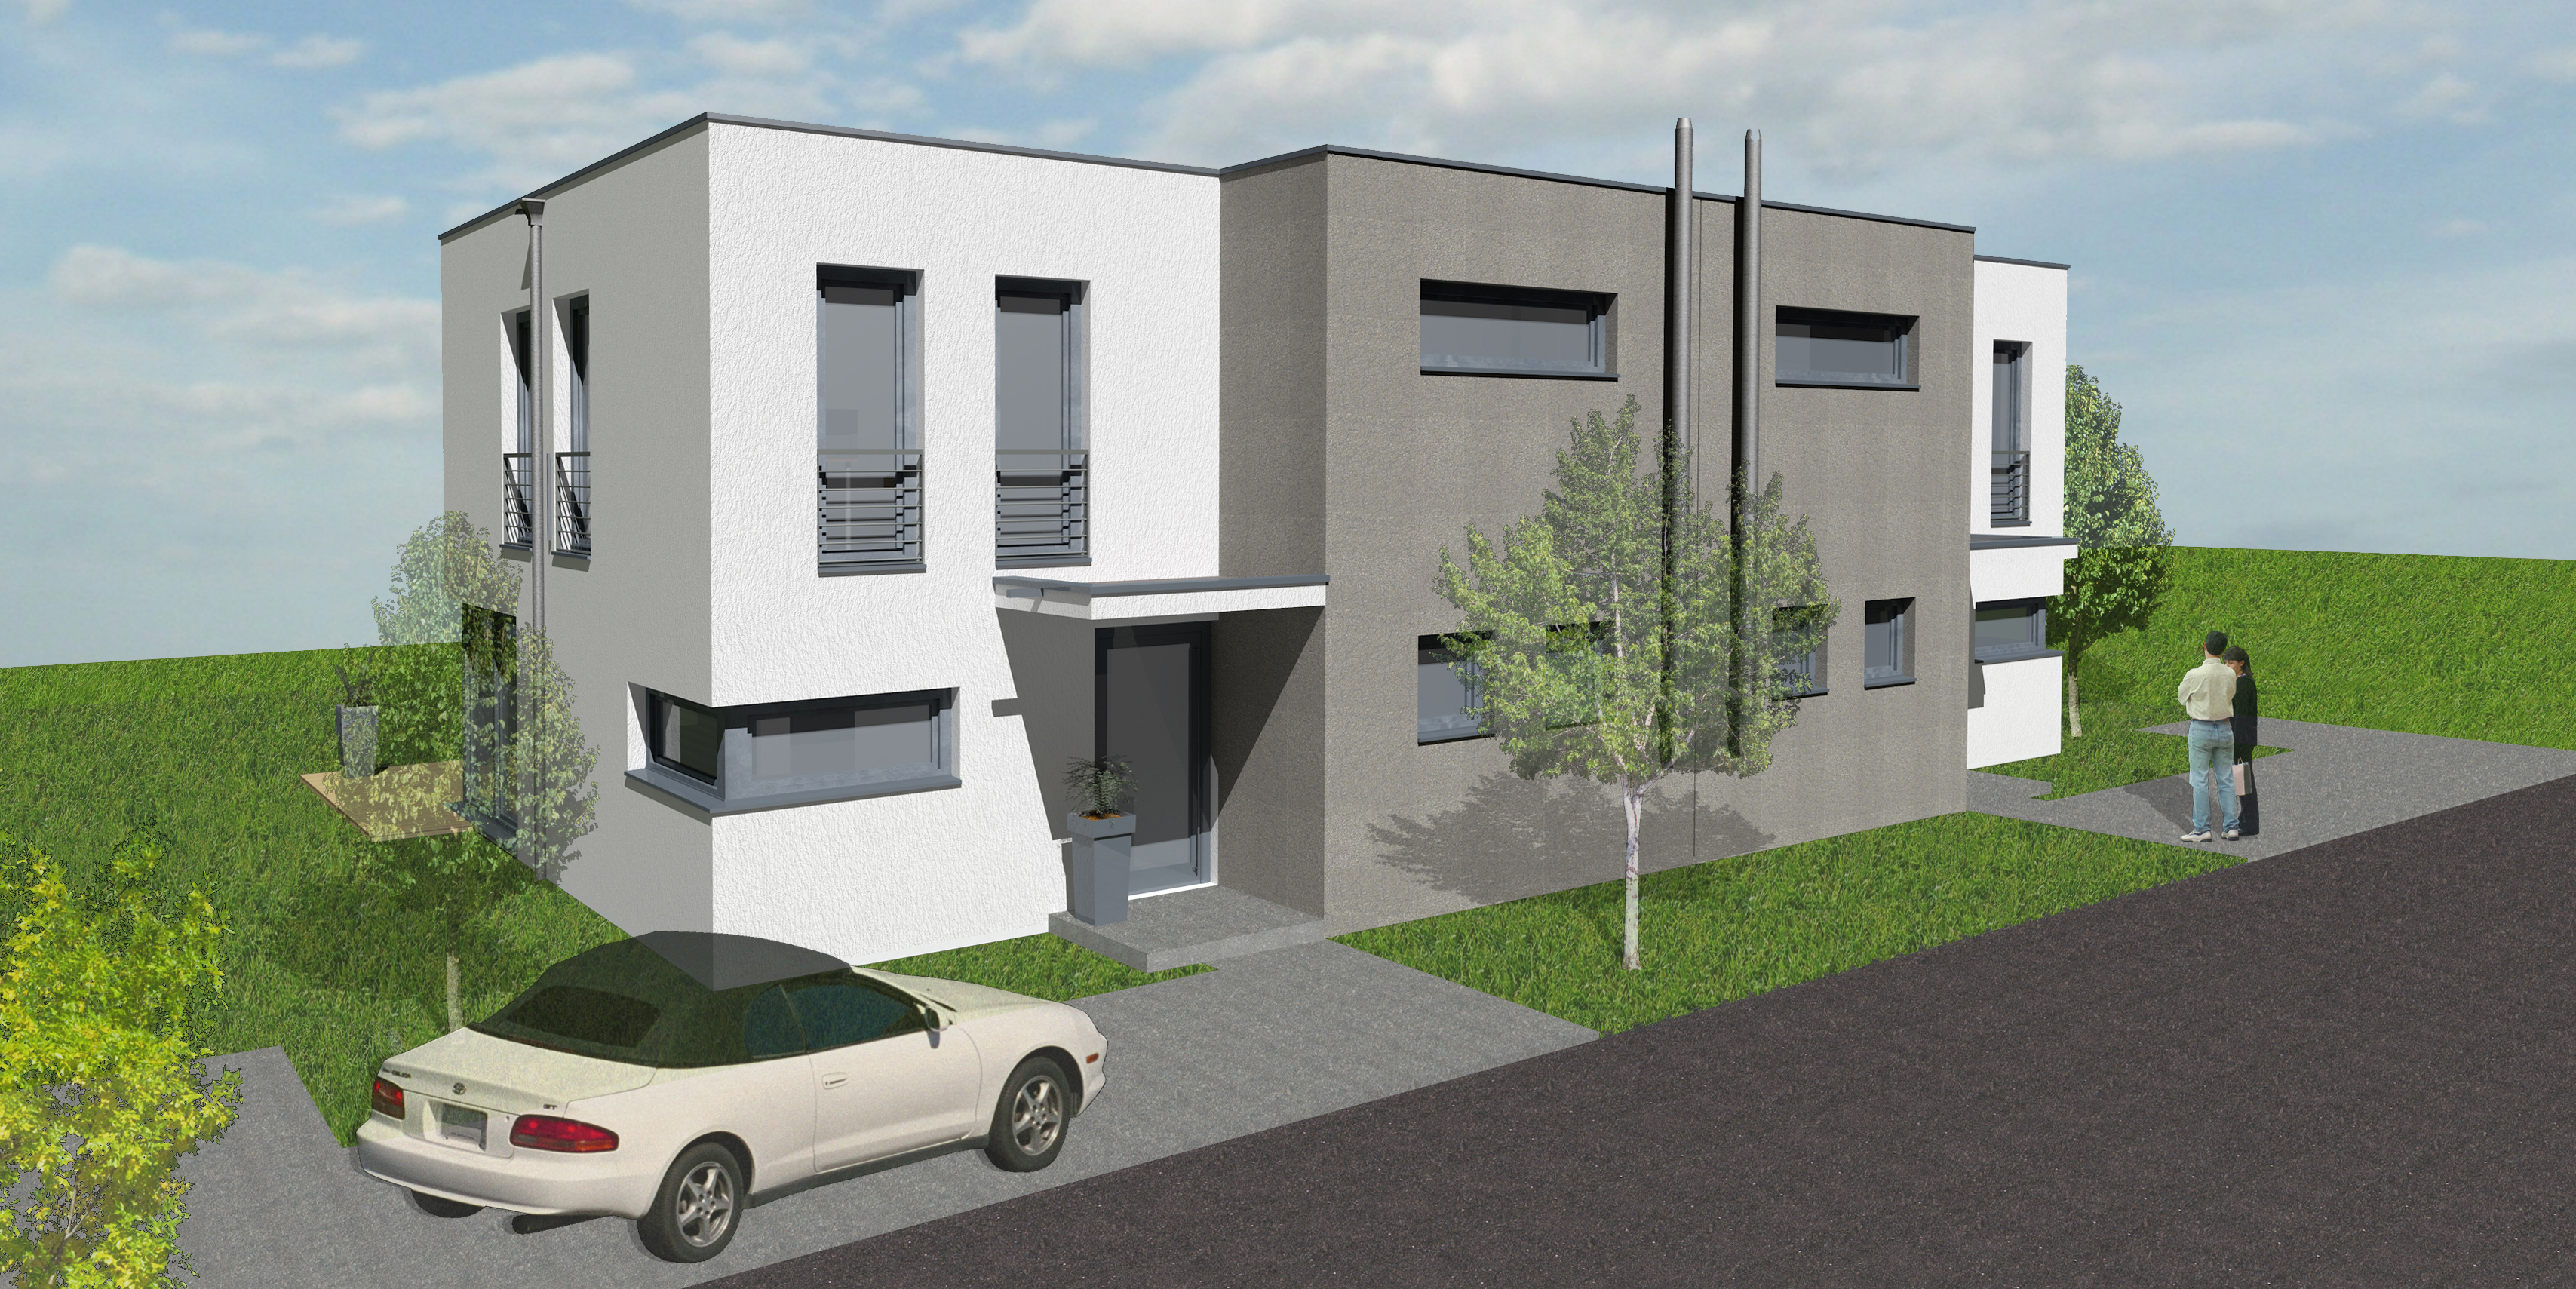 Neubau einer Doppelhausanlage in Bad Kreuznach Bild 2